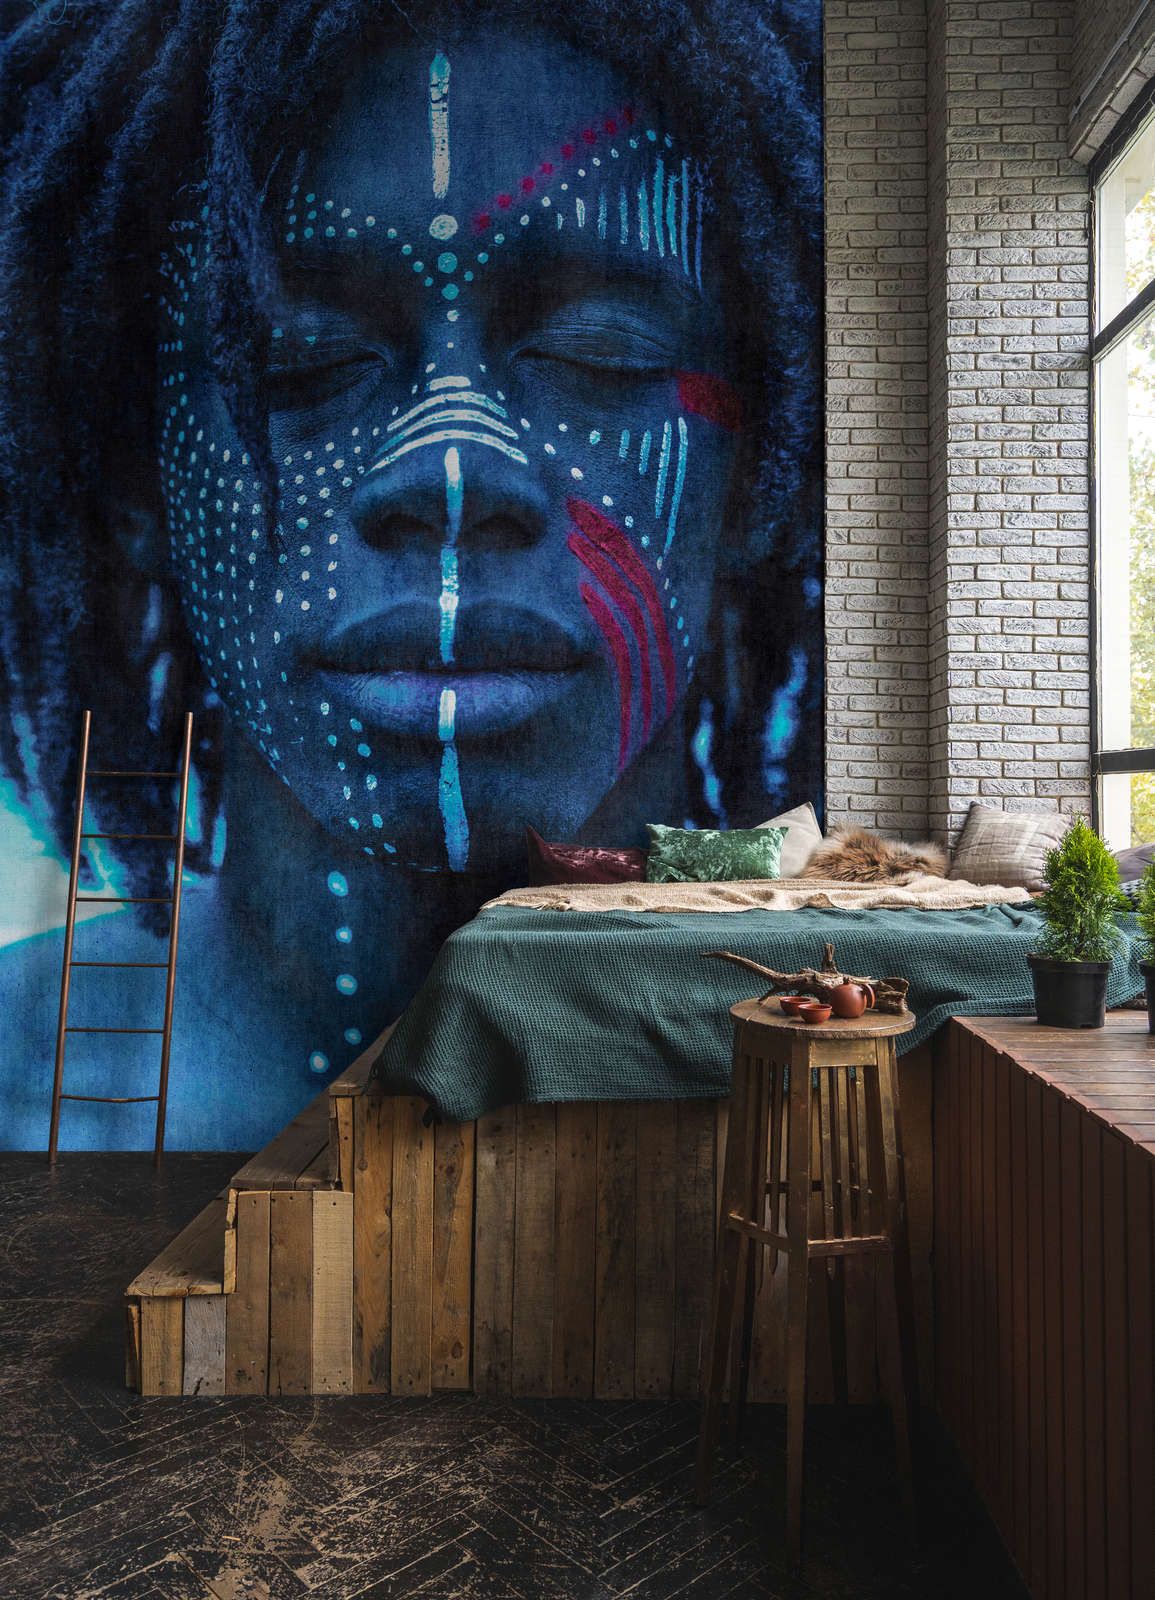             Fotomurali »mikala« - Ritratto africano blu con struttura ad arazzo - Materiali non tessuto premium liscio e leggermente lucido
        